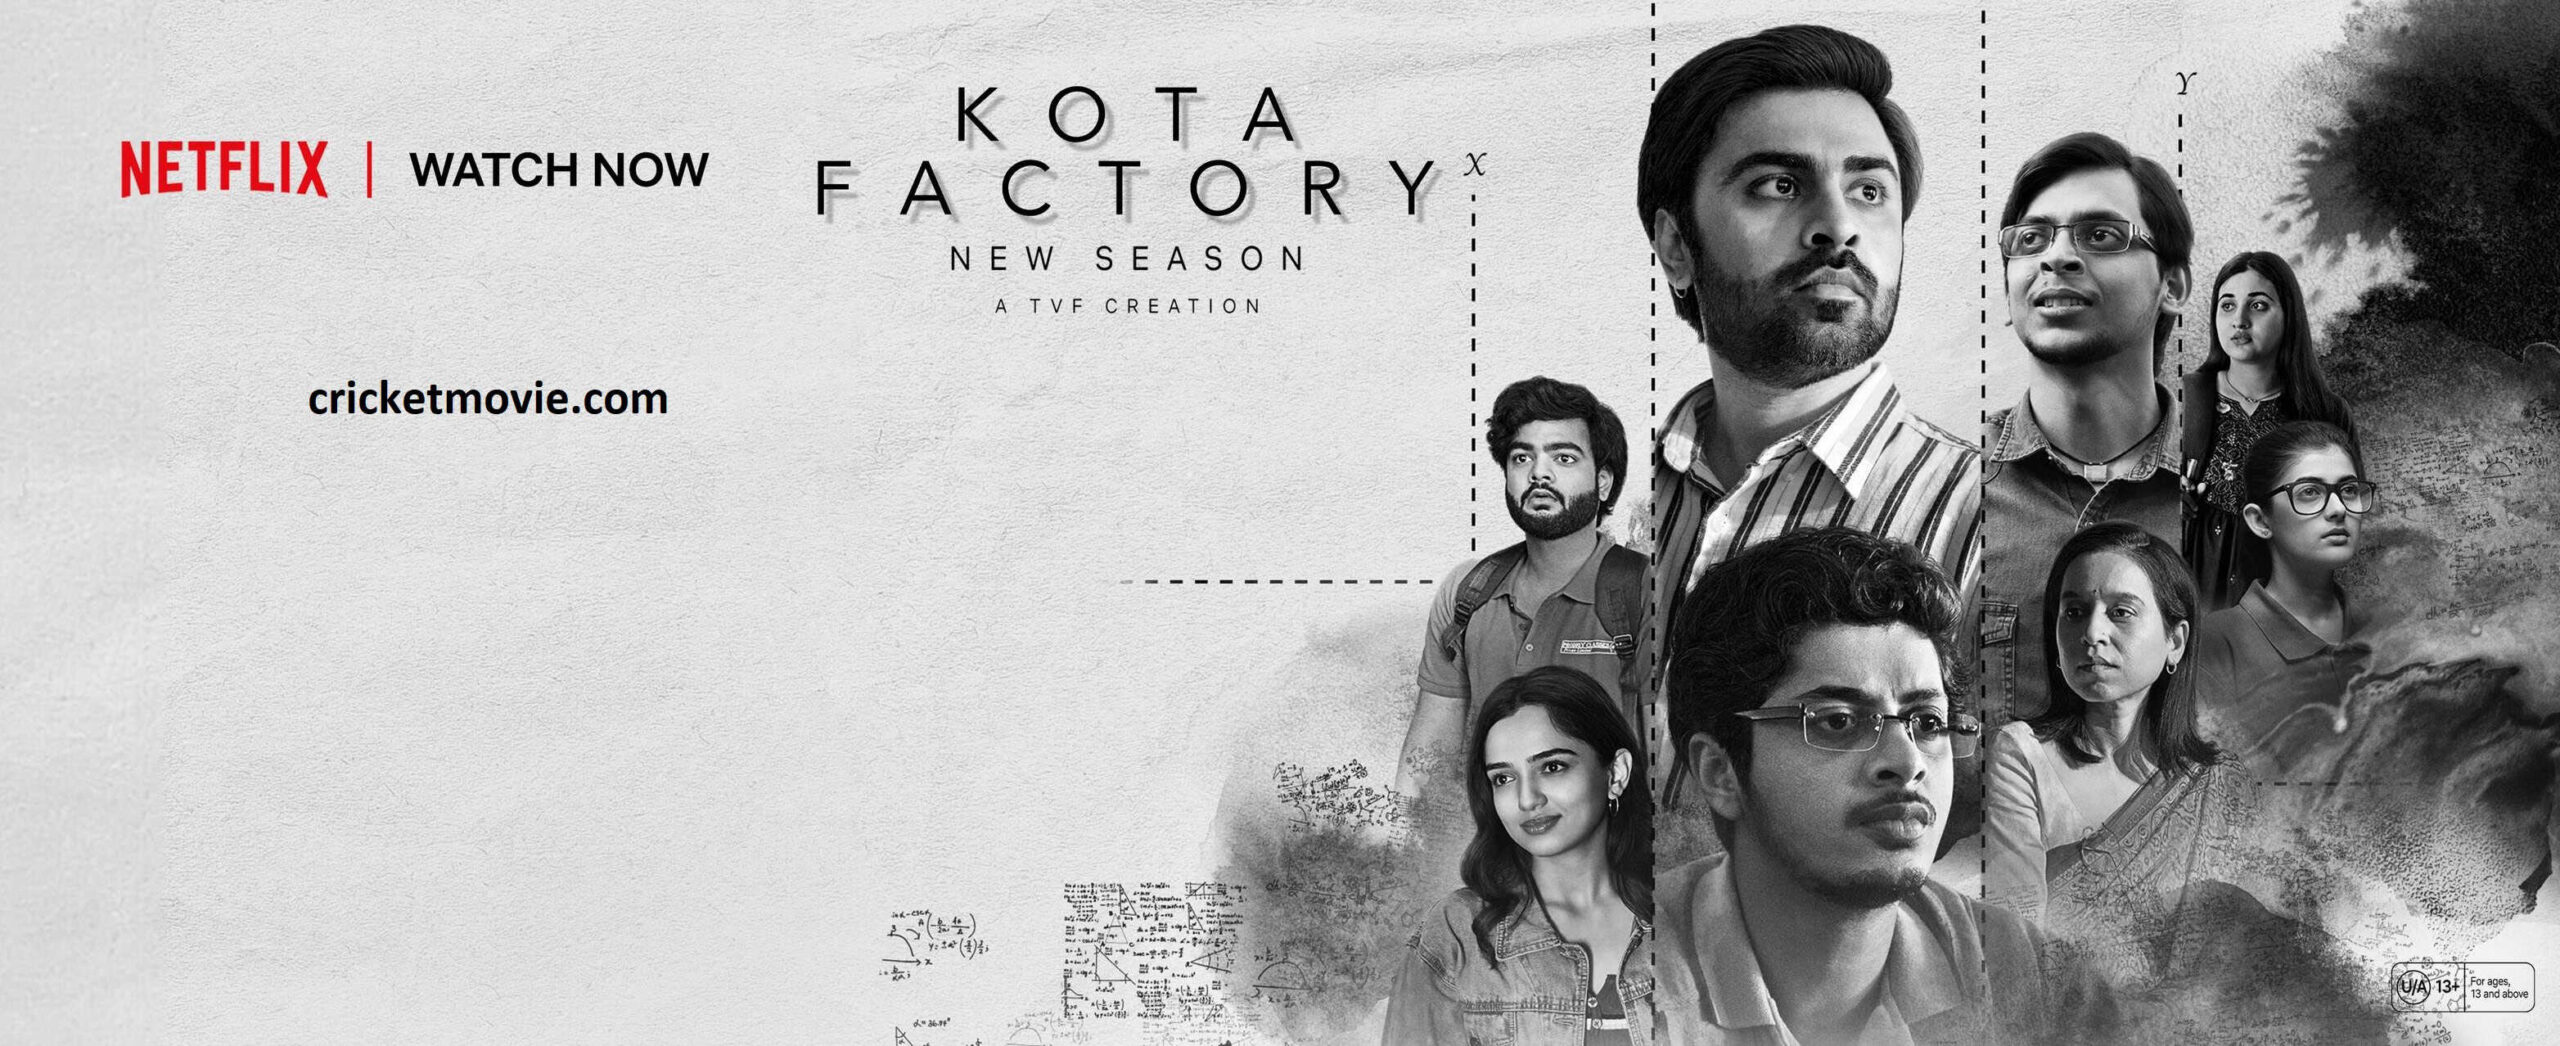 Kota Factory 3 Review-cricketmovie.com